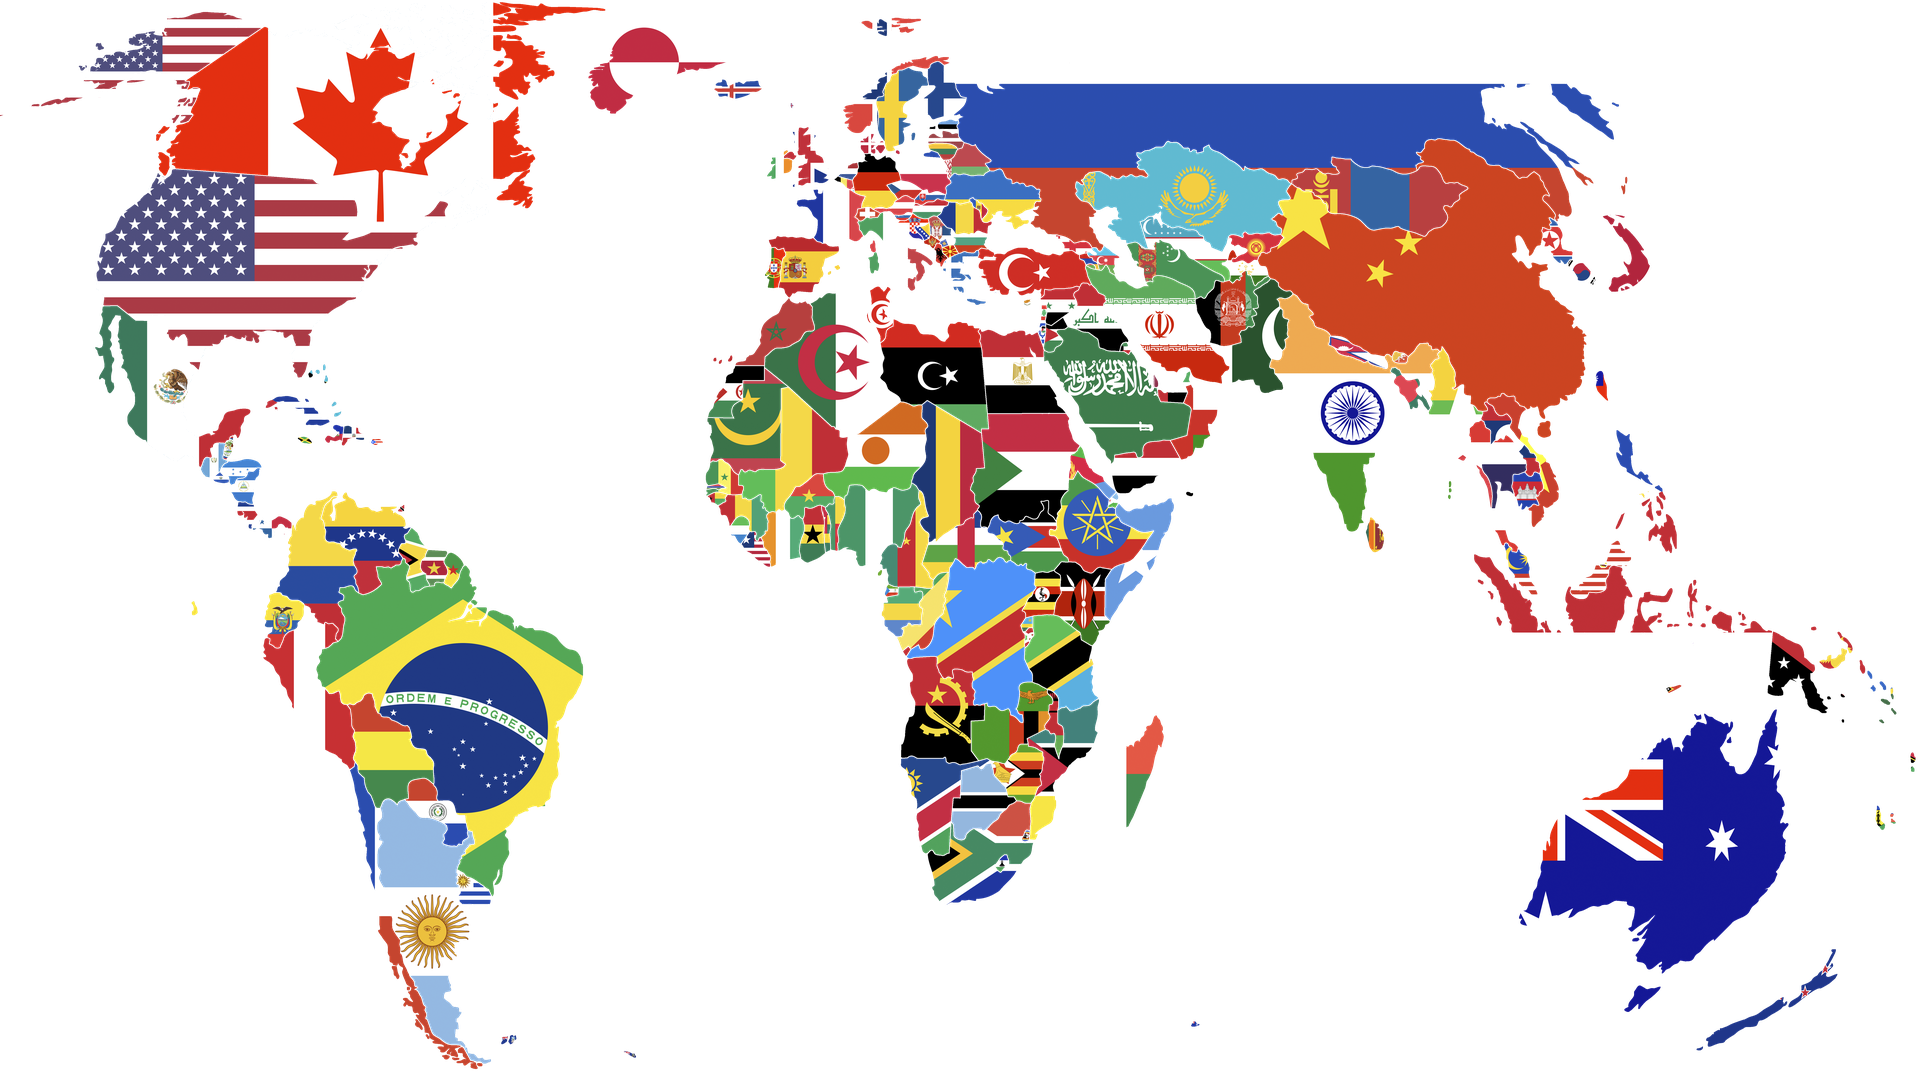 Juegos de Geografía | Juego de Capitales del mundo con banderas | Cerebriti